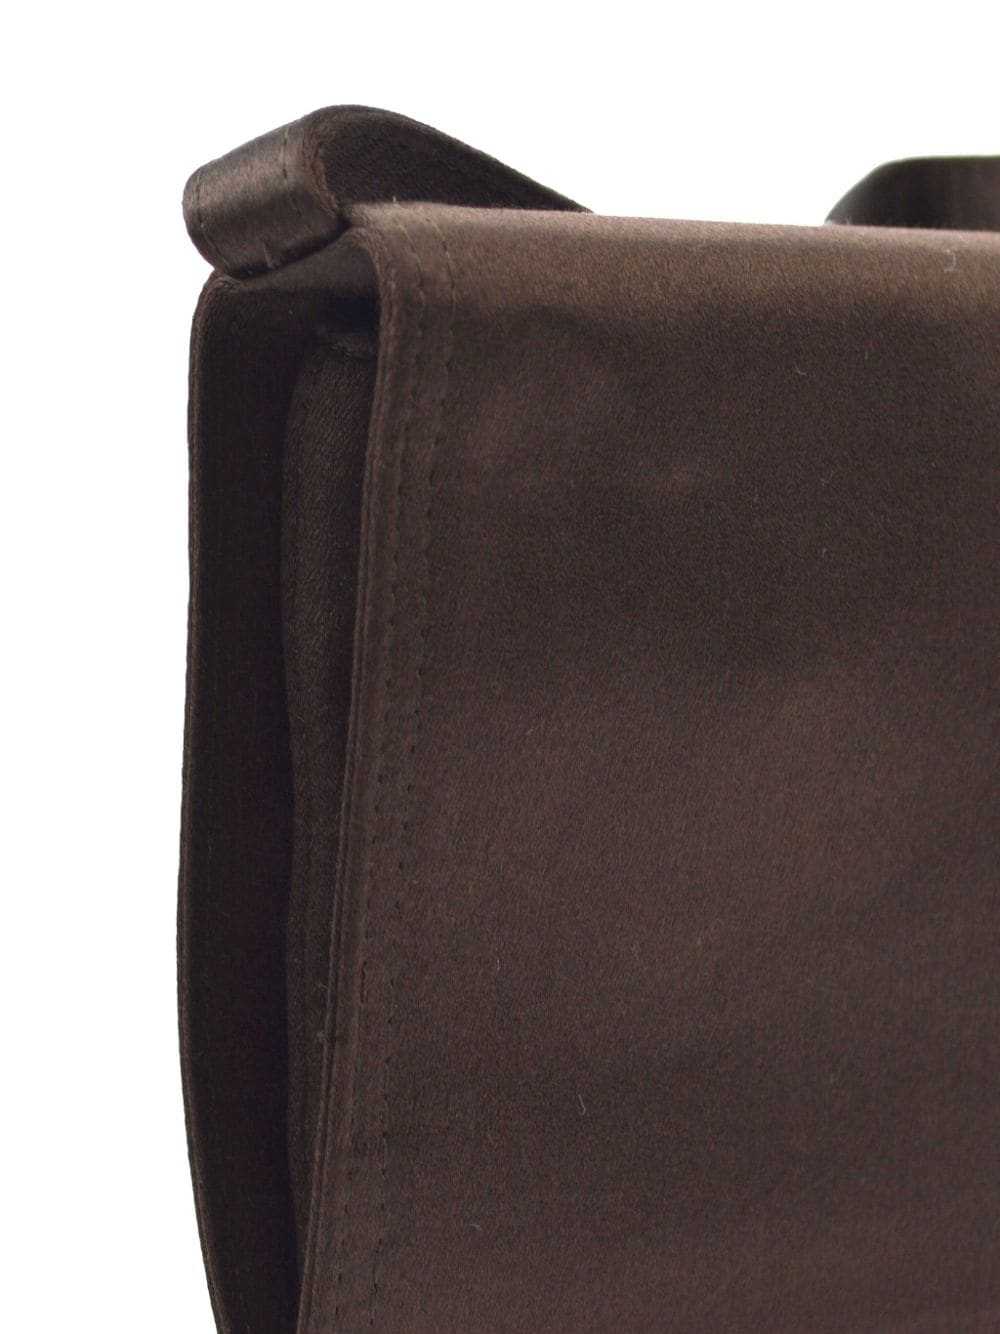 Prada Pre-Owned 1990-2000 flap shoulder bag - Bro… - image 3